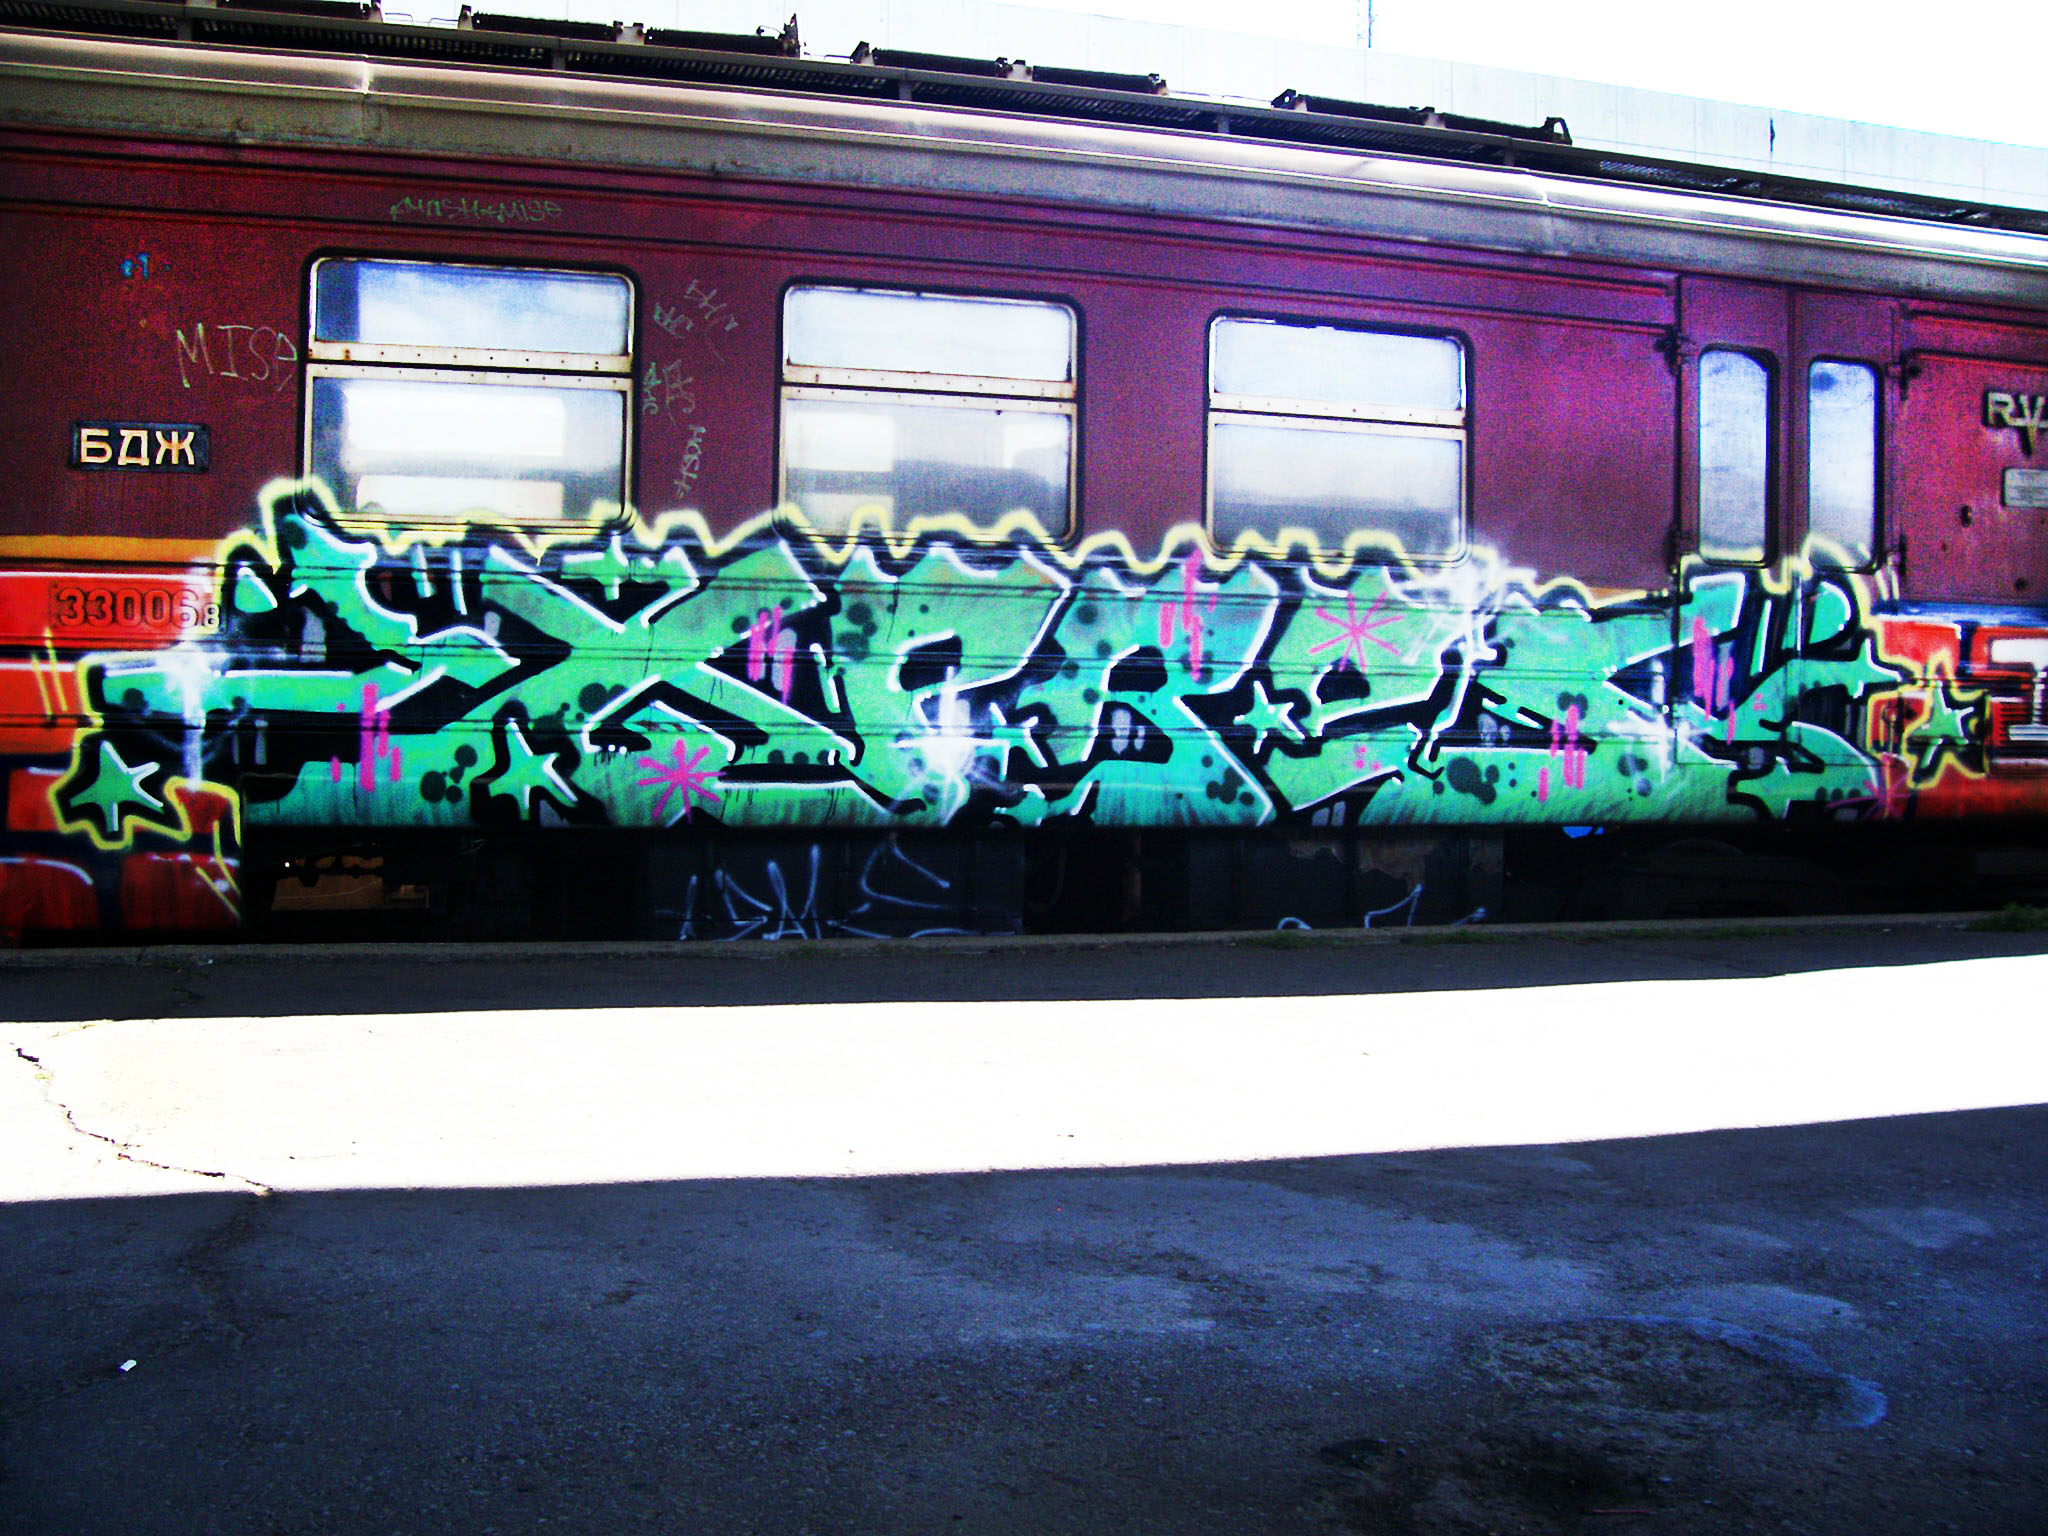 xpres - EAK - Sofiq - 2008